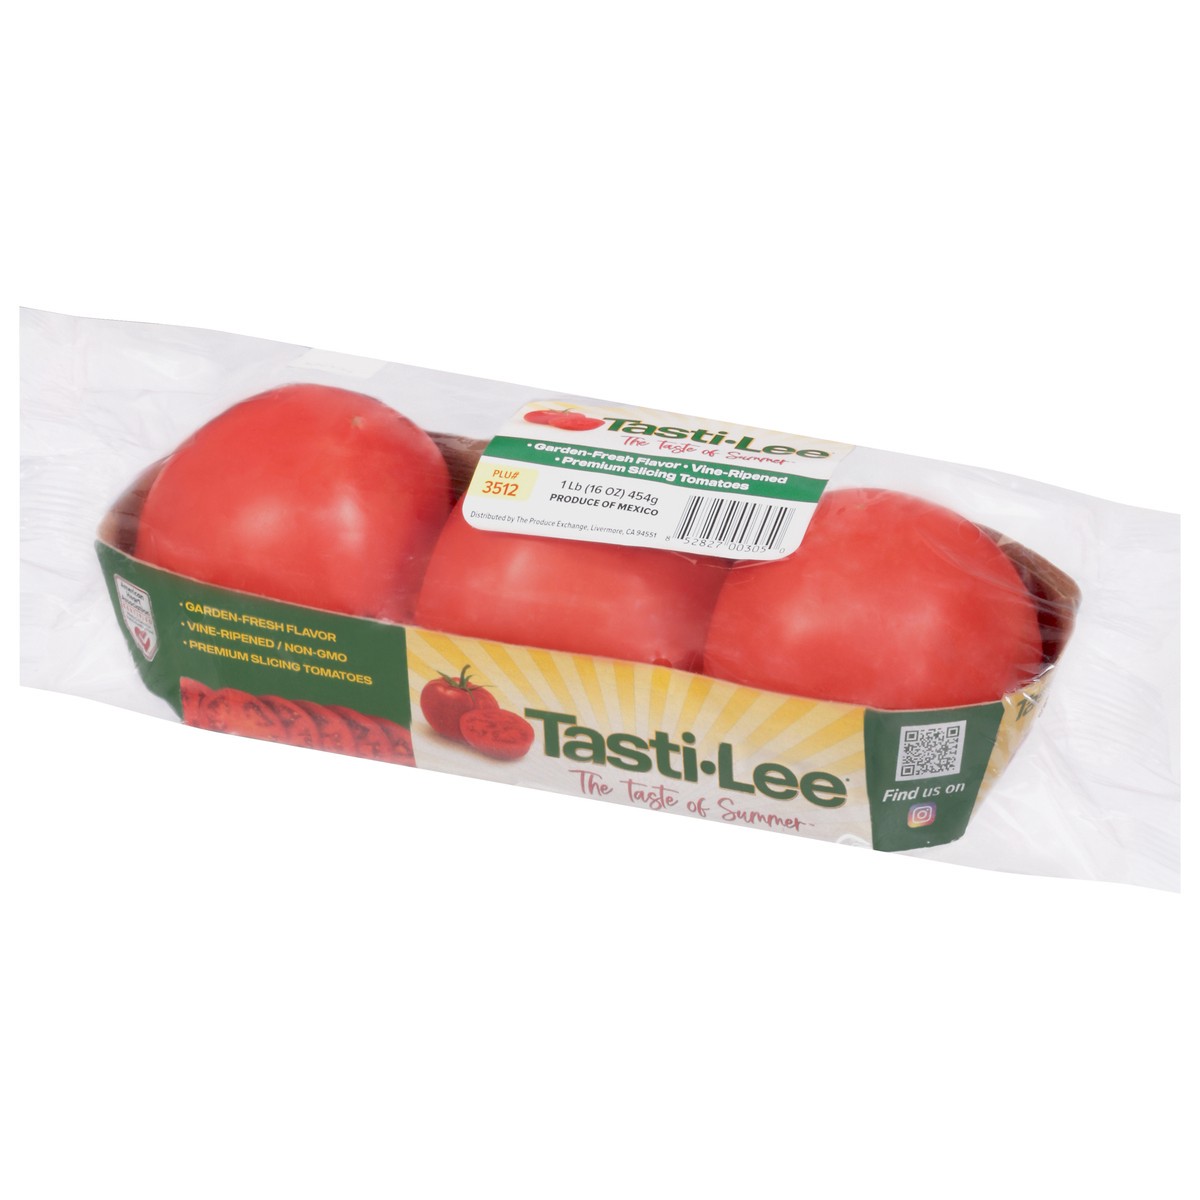 slide 3 of 9, Tasti-Lee Premium Vine-Ripened Tomatoes, 1 lb